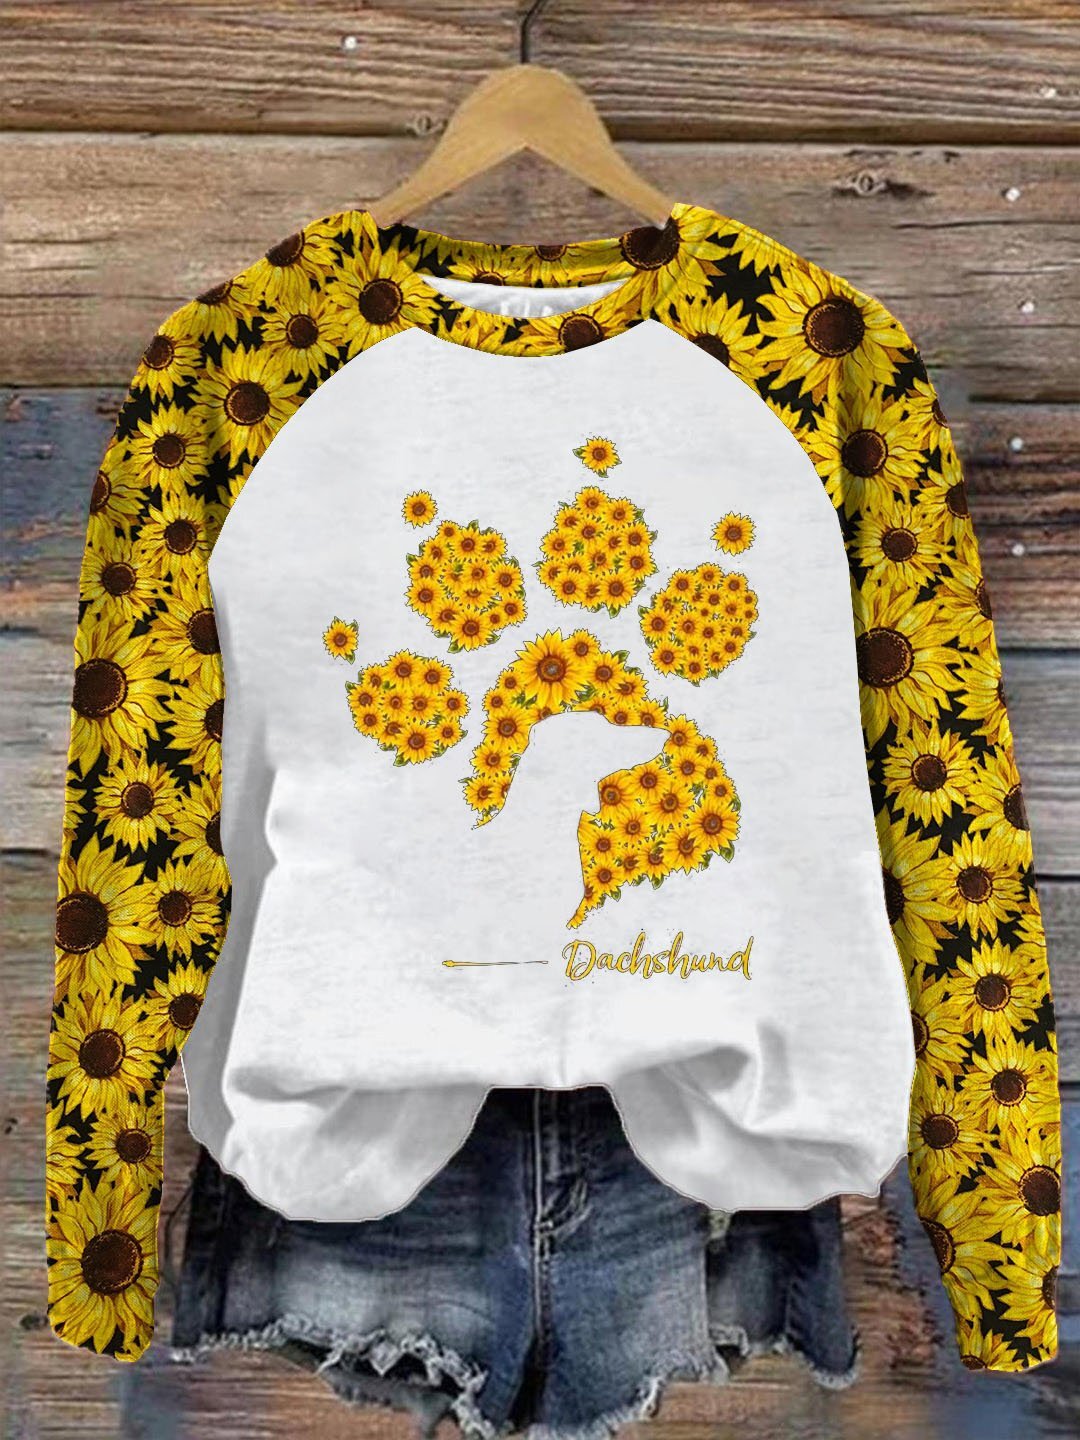 Women's Sunflower Dachshund Print Sweatshirt